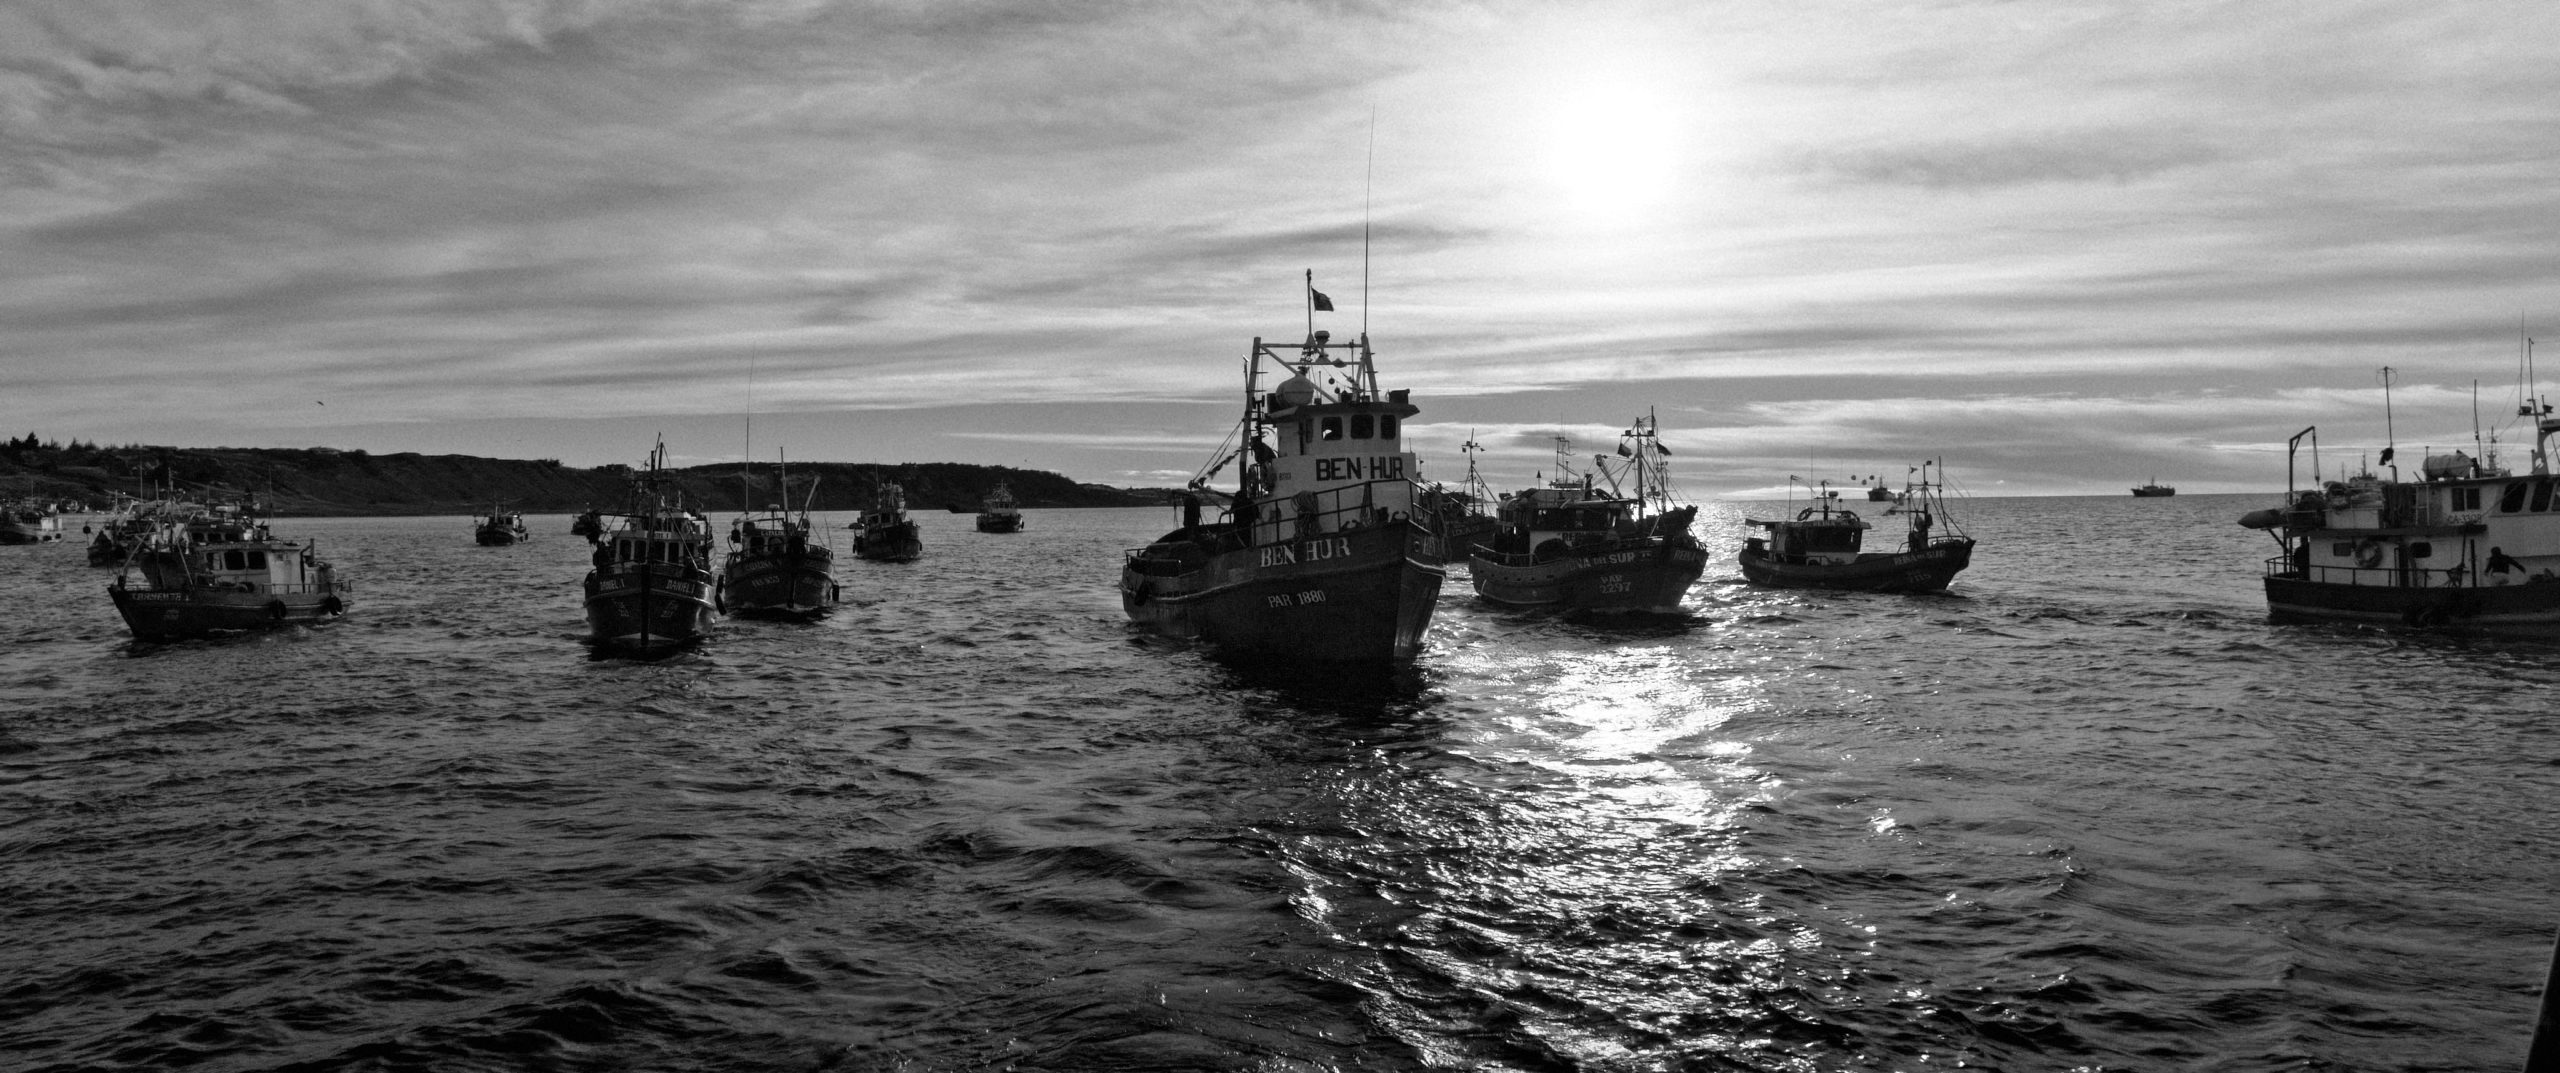 Cornes de brume_pêcheurs rendant hommage aux morts en mer_Punta Arenas